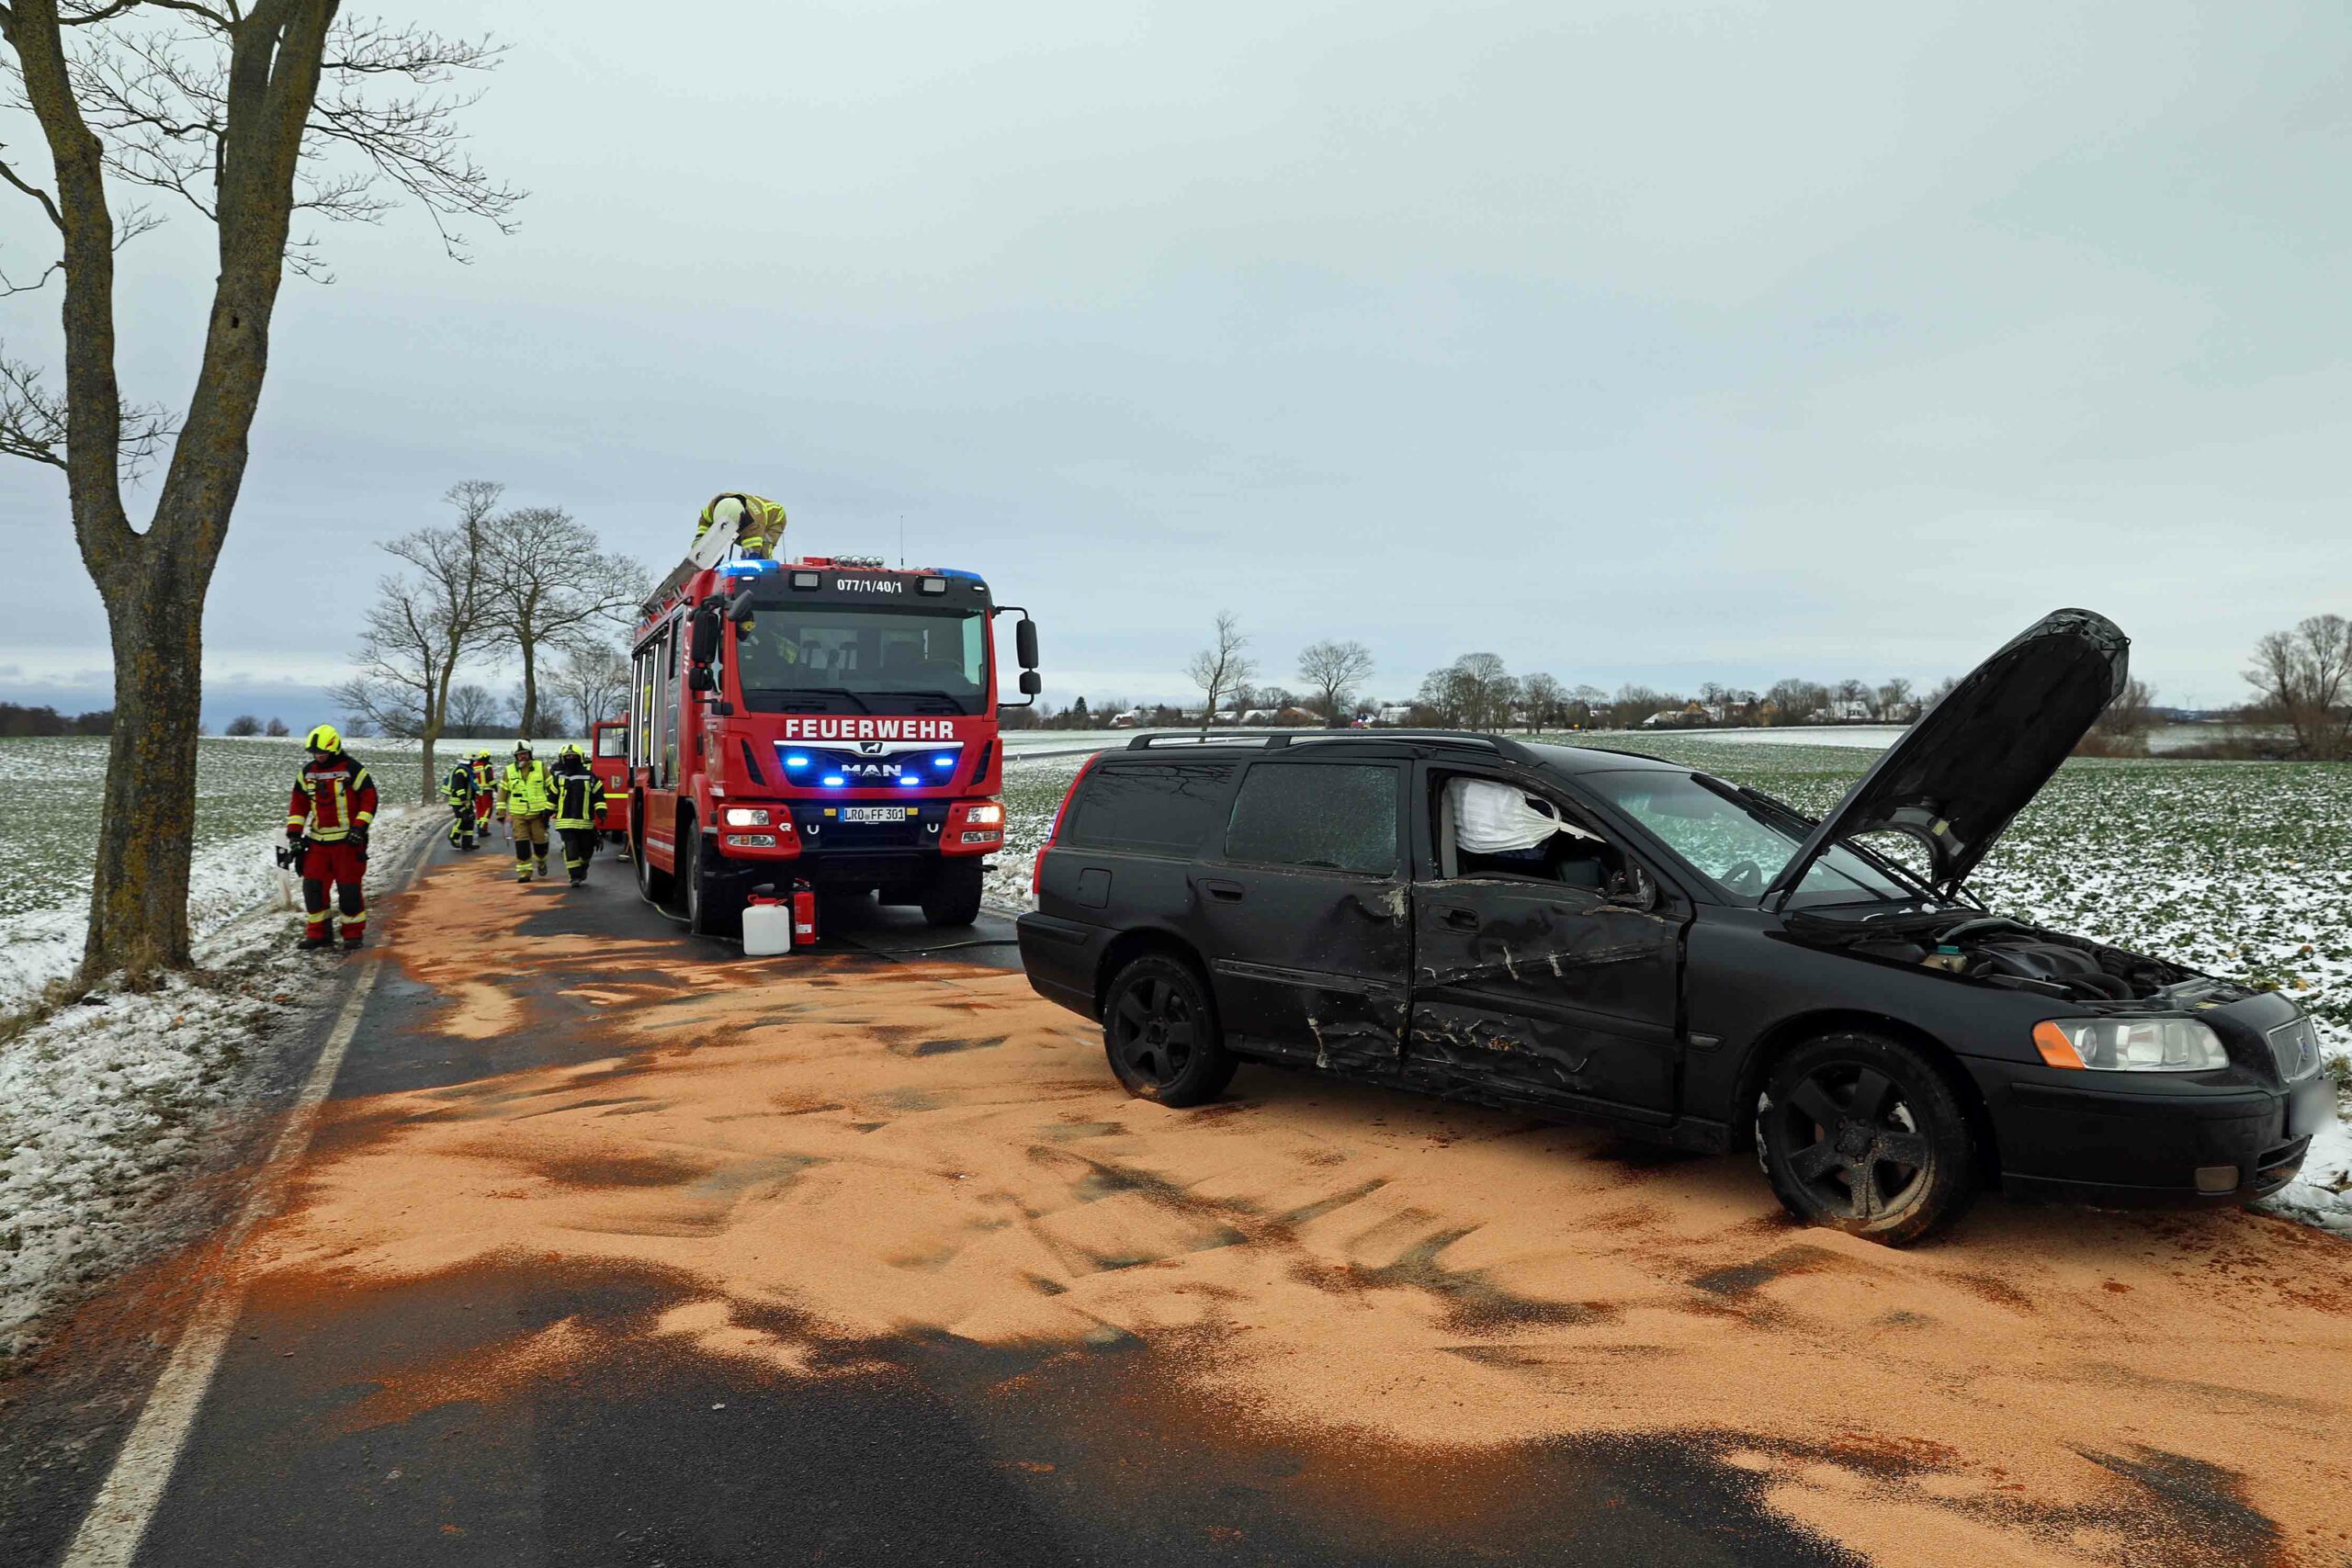 Von glatter Straße abgekomen. Volvo kracht gegen Baum, Eltern und Kind bei Rostock verletzt